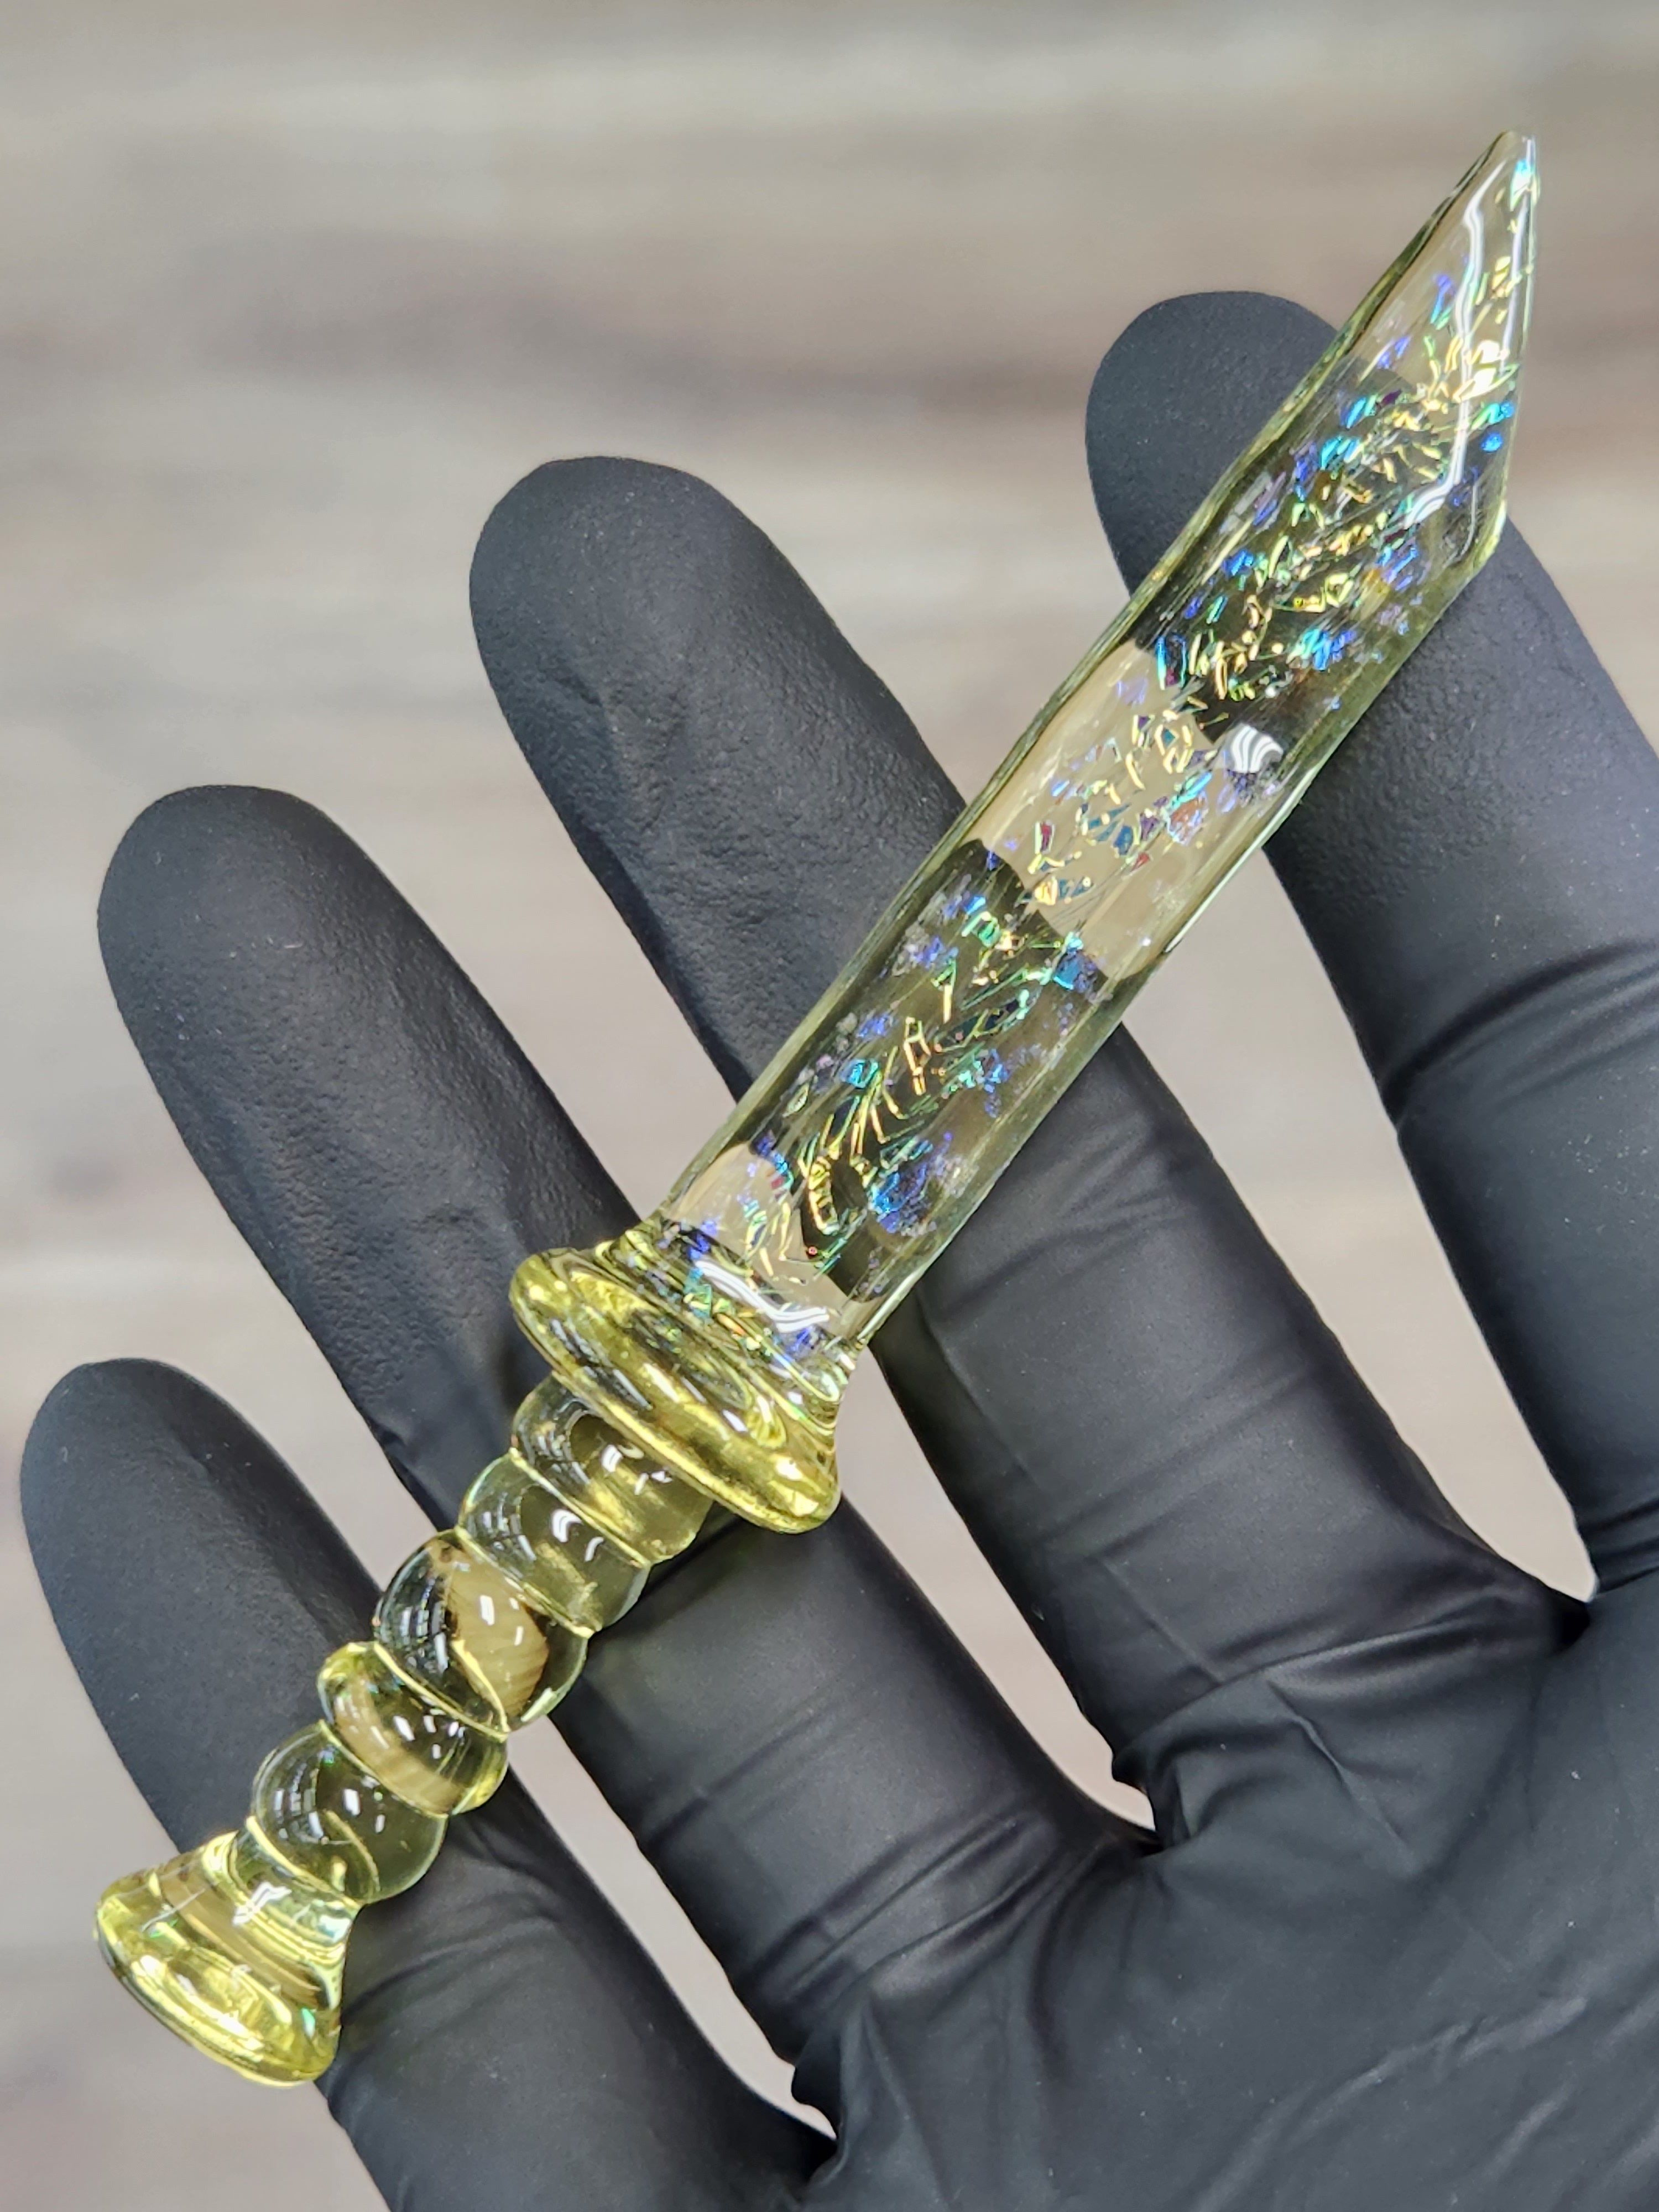 Sword Dab Tool Glass